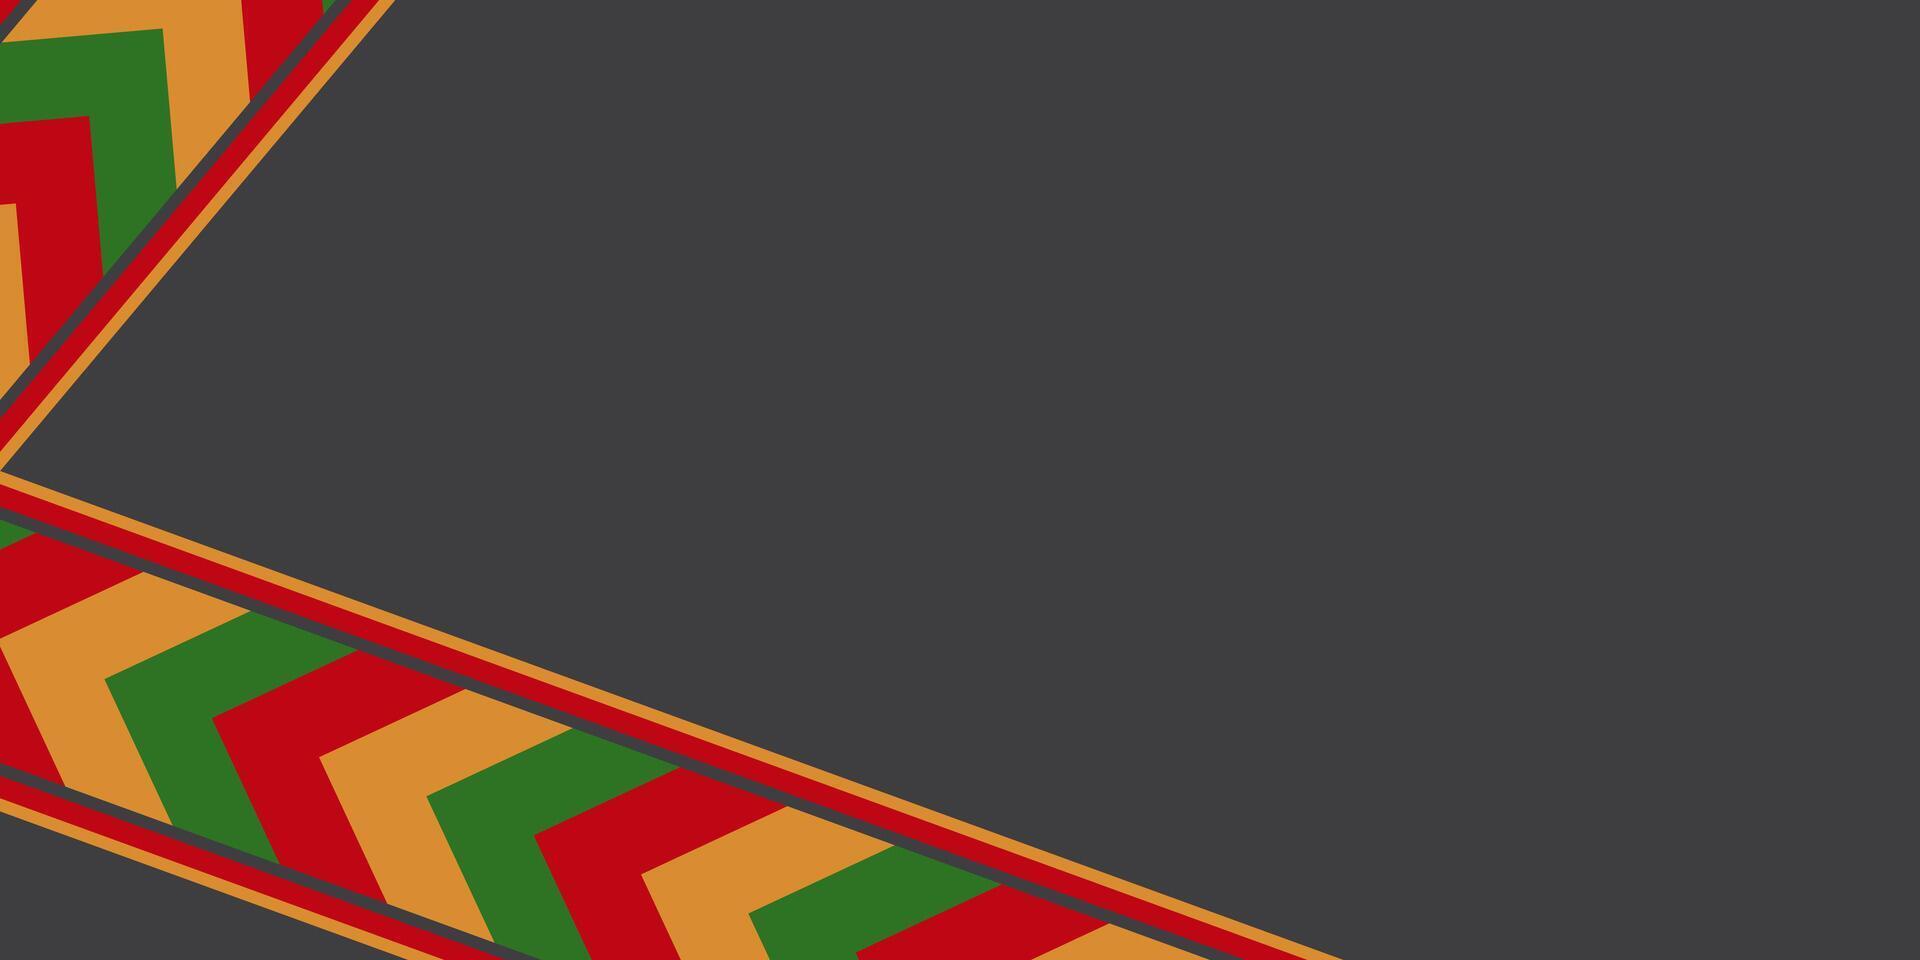 noir, rouge, jaune, vert abstrait juneteenth Contexte. vecteur modèle conception avec vide espace pour texte. africain américain noir histoire mois.